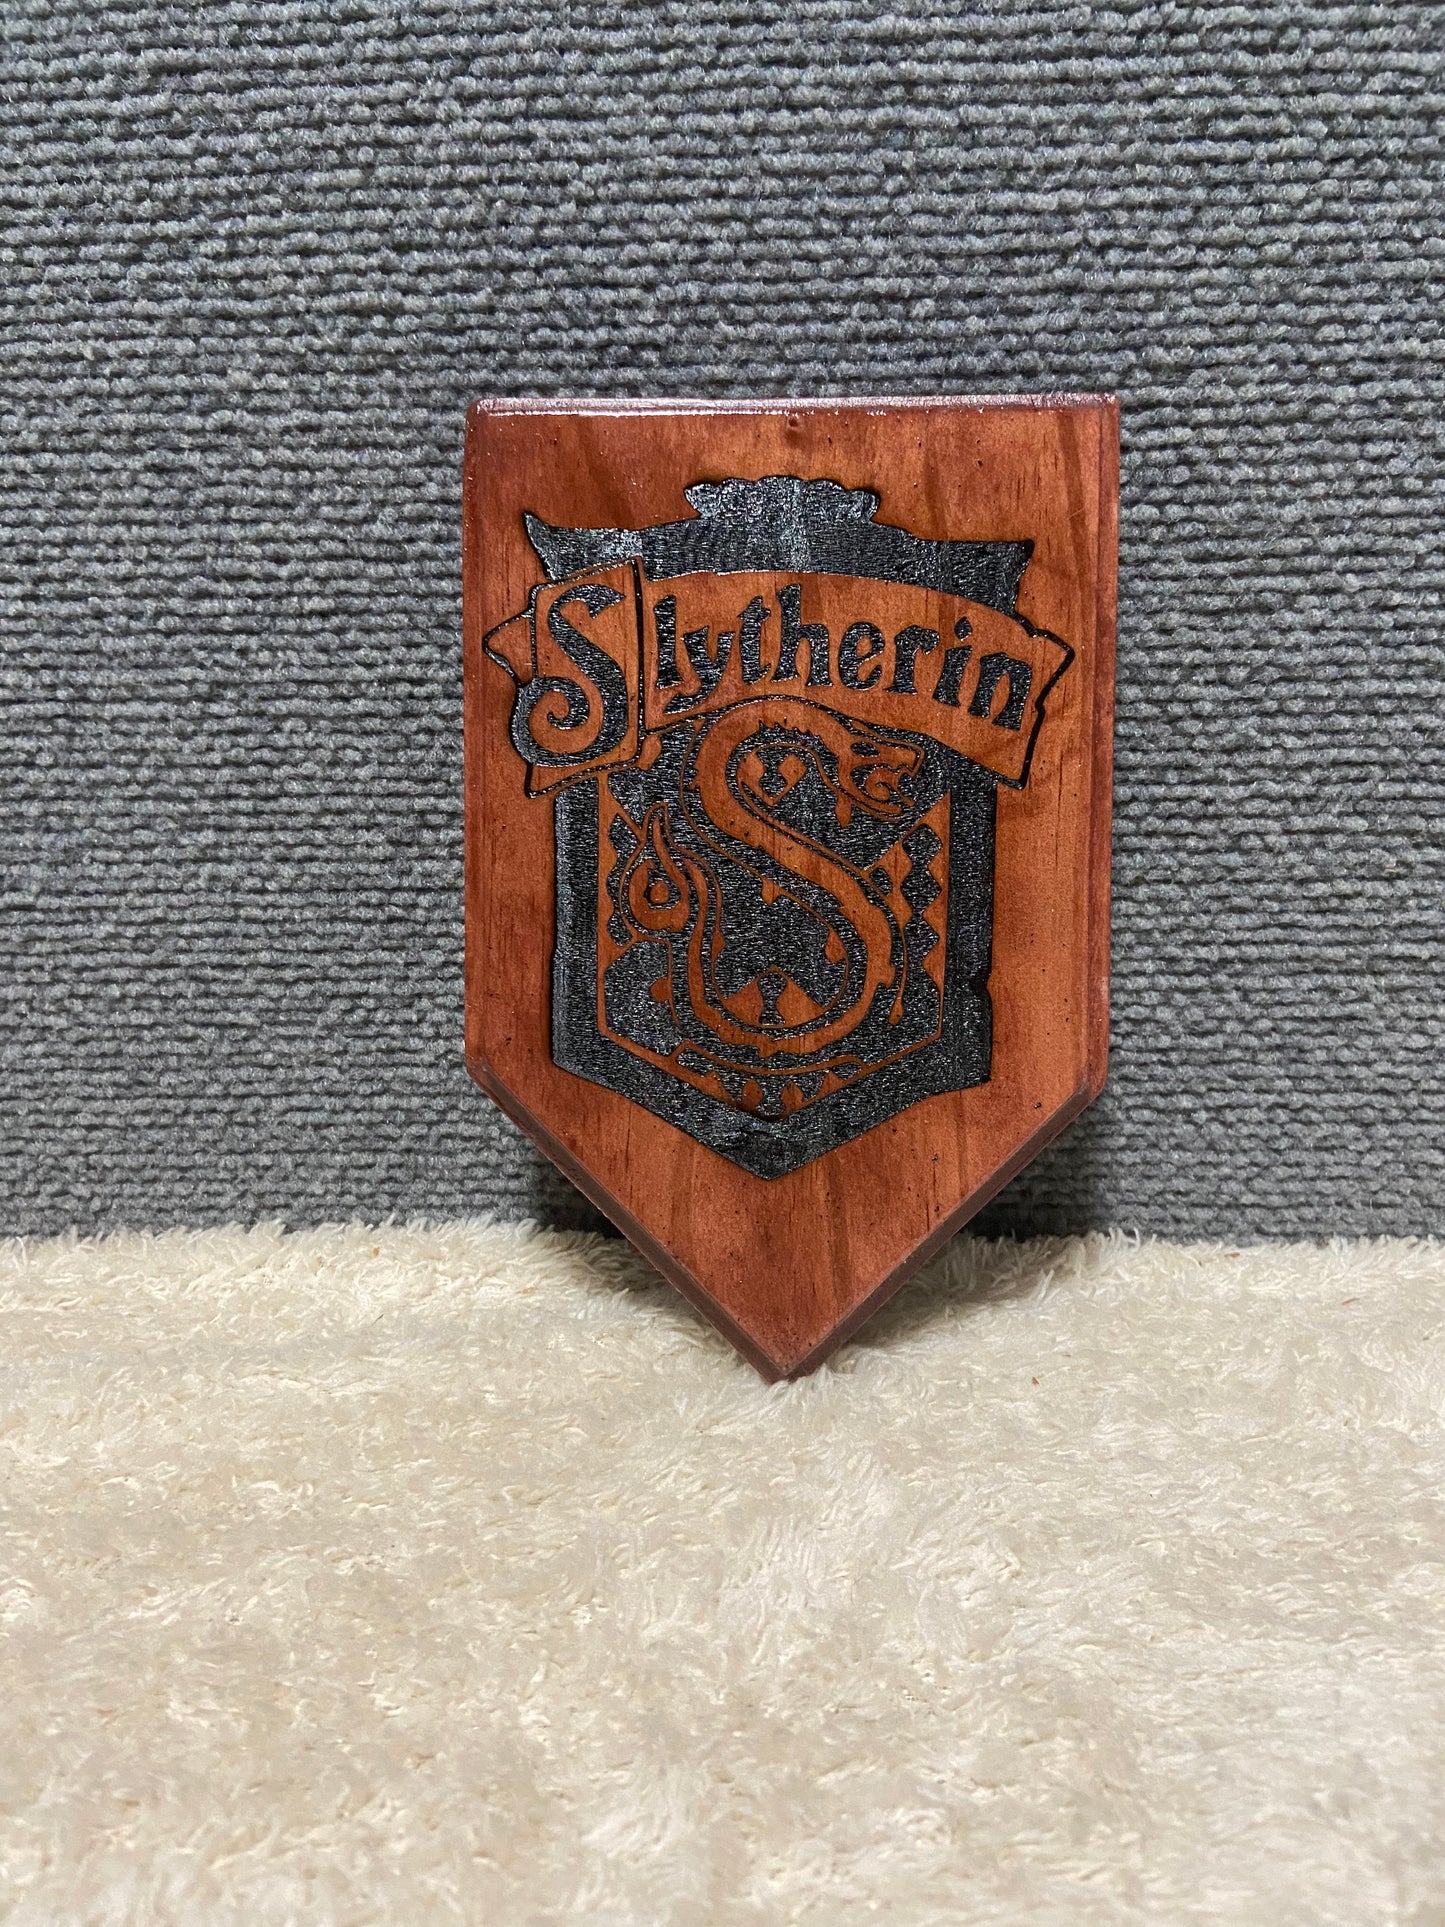 Potter Shield Crests